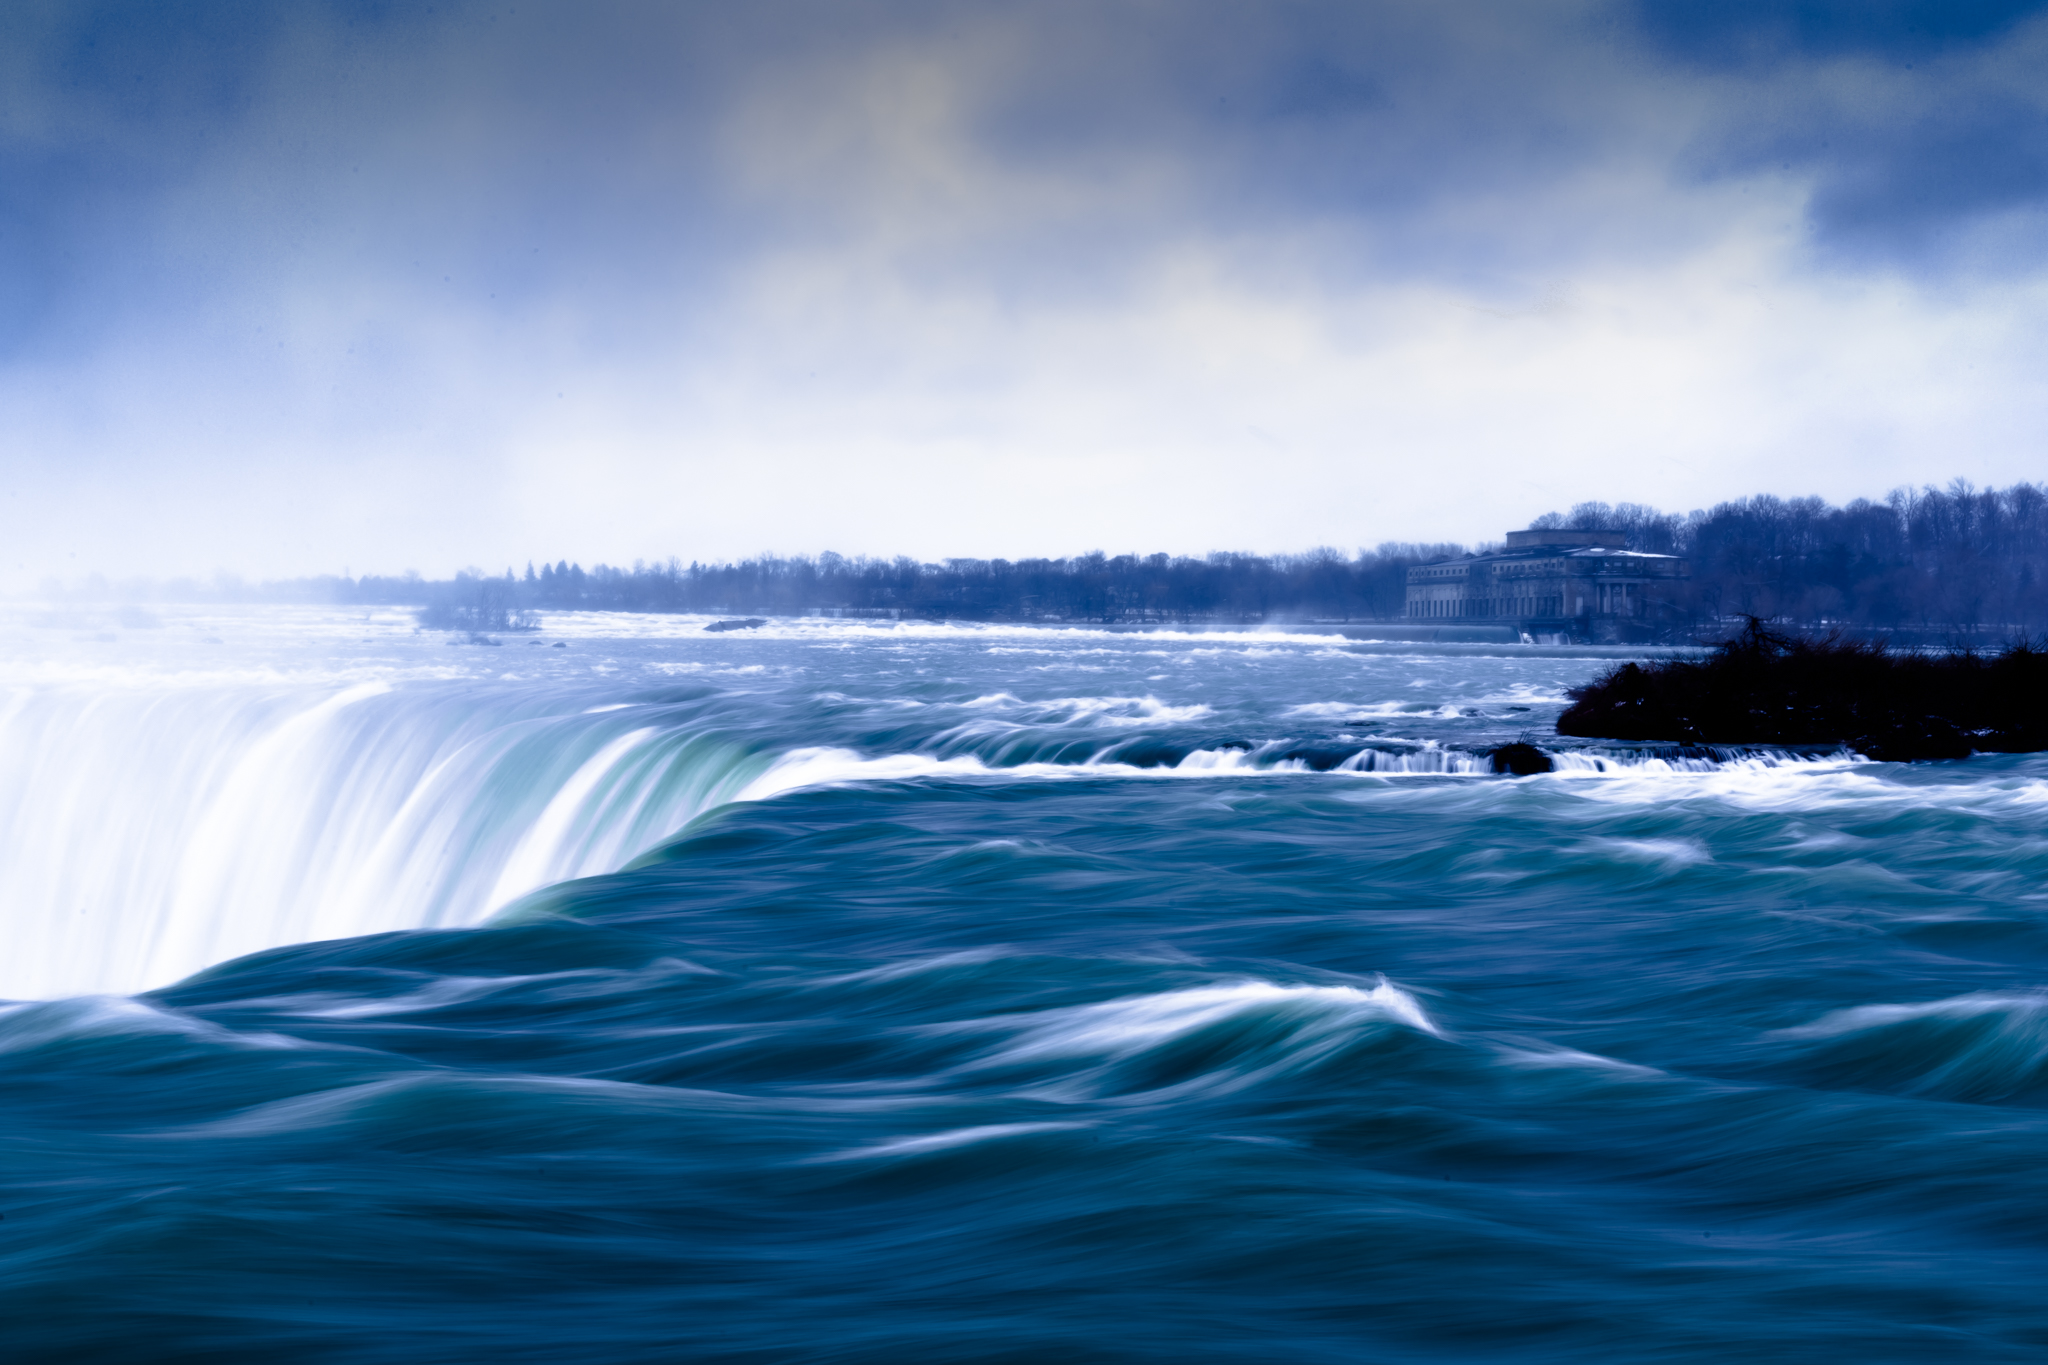 Niagara Falls - Image Copyright Aaron Beaudoin